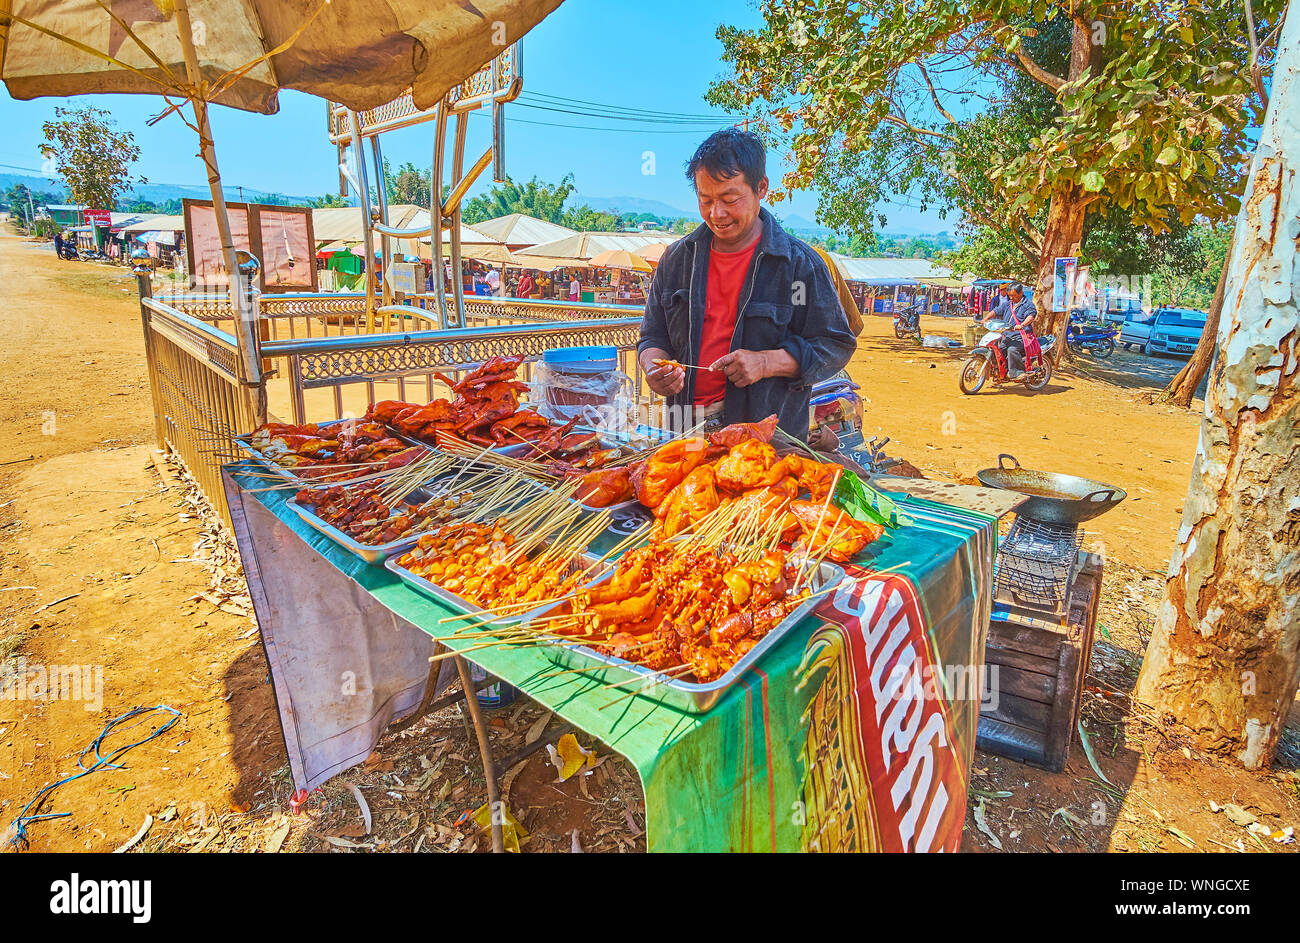 KAKKU, MYANMAR - 20 febbraio 2018: il cibo di strada fornitore offre pollo alla griglia su spiedini all'ingresso al mercato Kakku, su 20 Febbraio in Kakku. Foto Stock